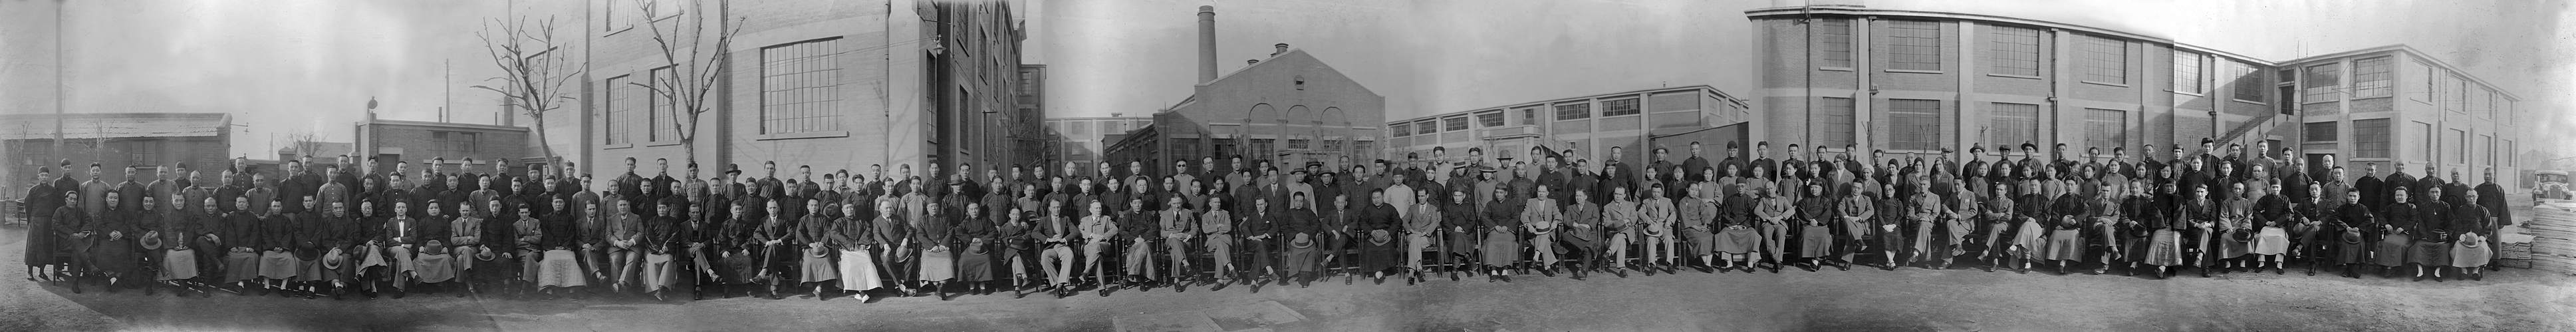 British-American Tobacco Company Staff - Late 1940s.